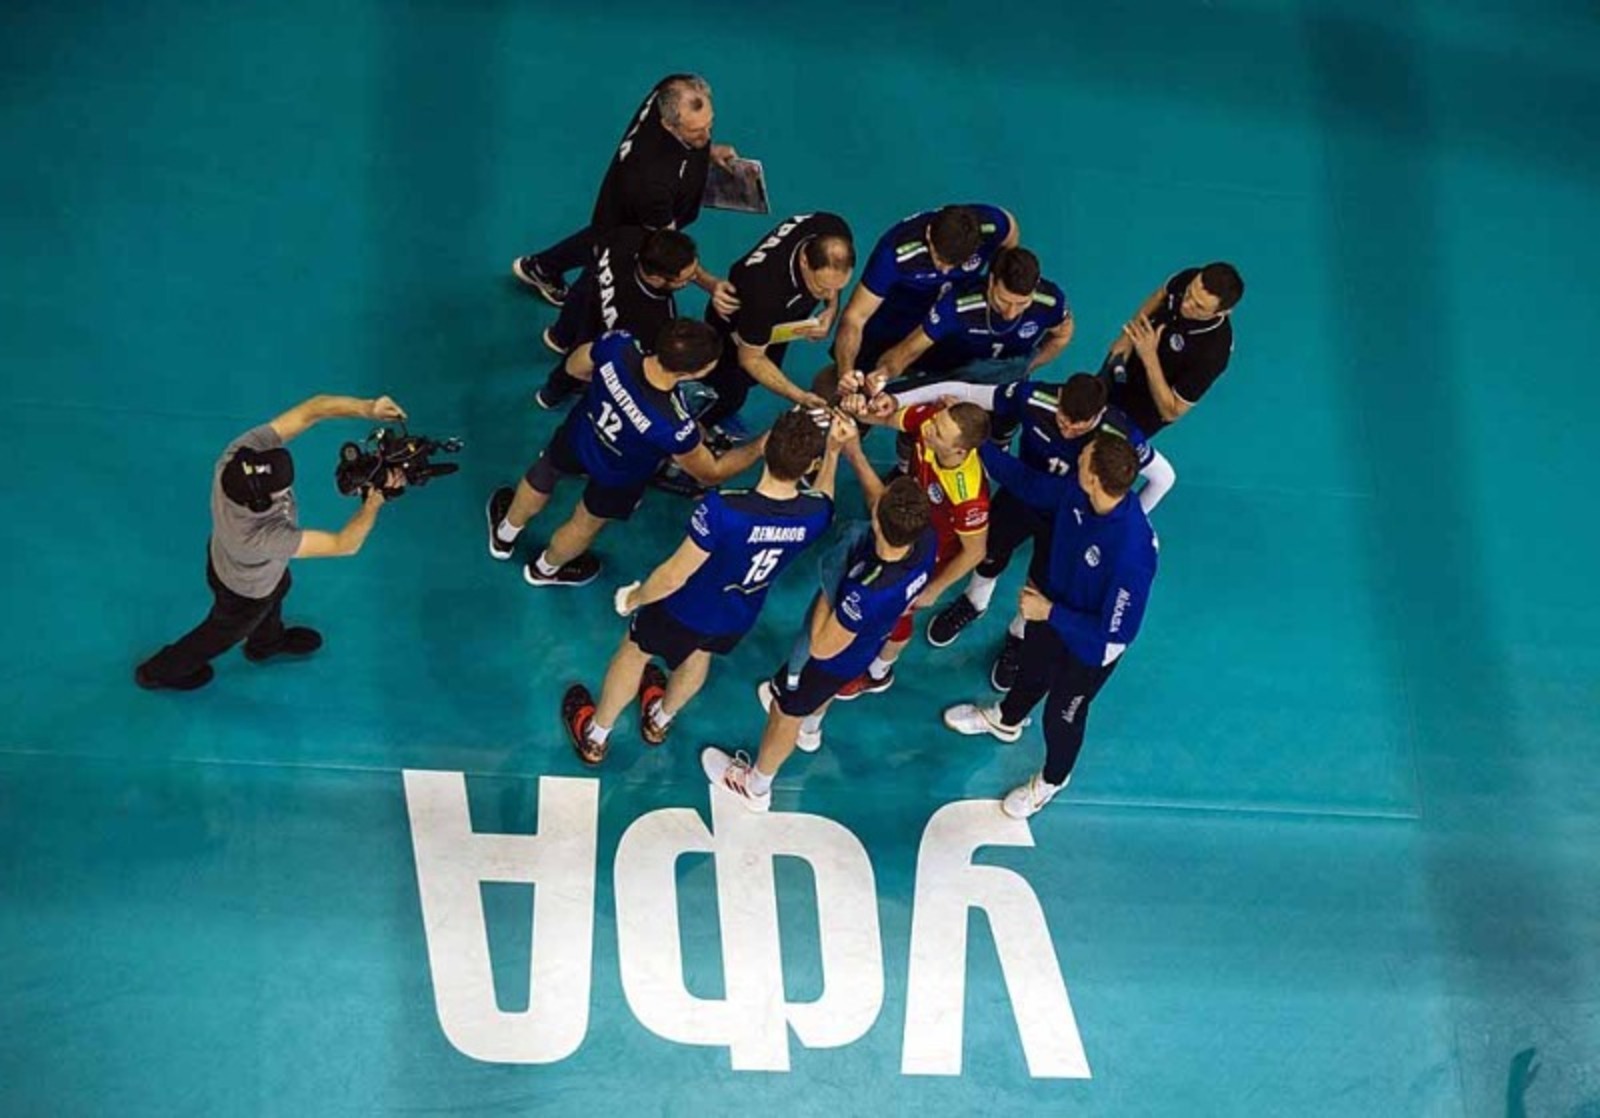 Волейбольный клуб «Урал» посвятит турнир памяти уфимского мэра